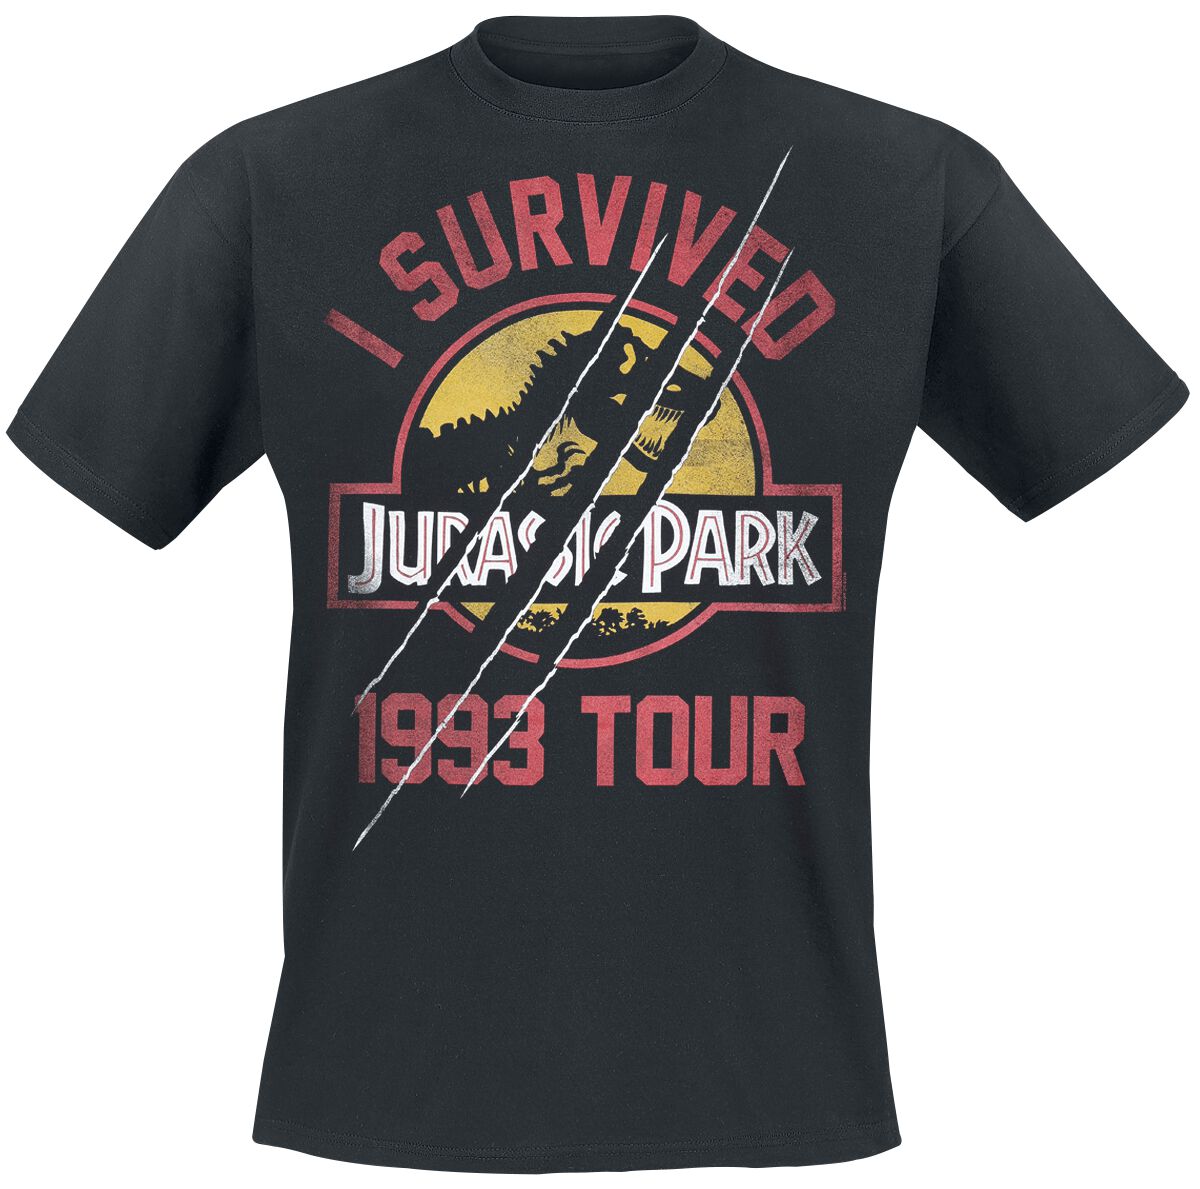 Jurassic Park T-Shirt - I Survived 1993 Tour - S bis XXL - für Männer - Größe L - schwarz  - EMP exklusives Merchandise!